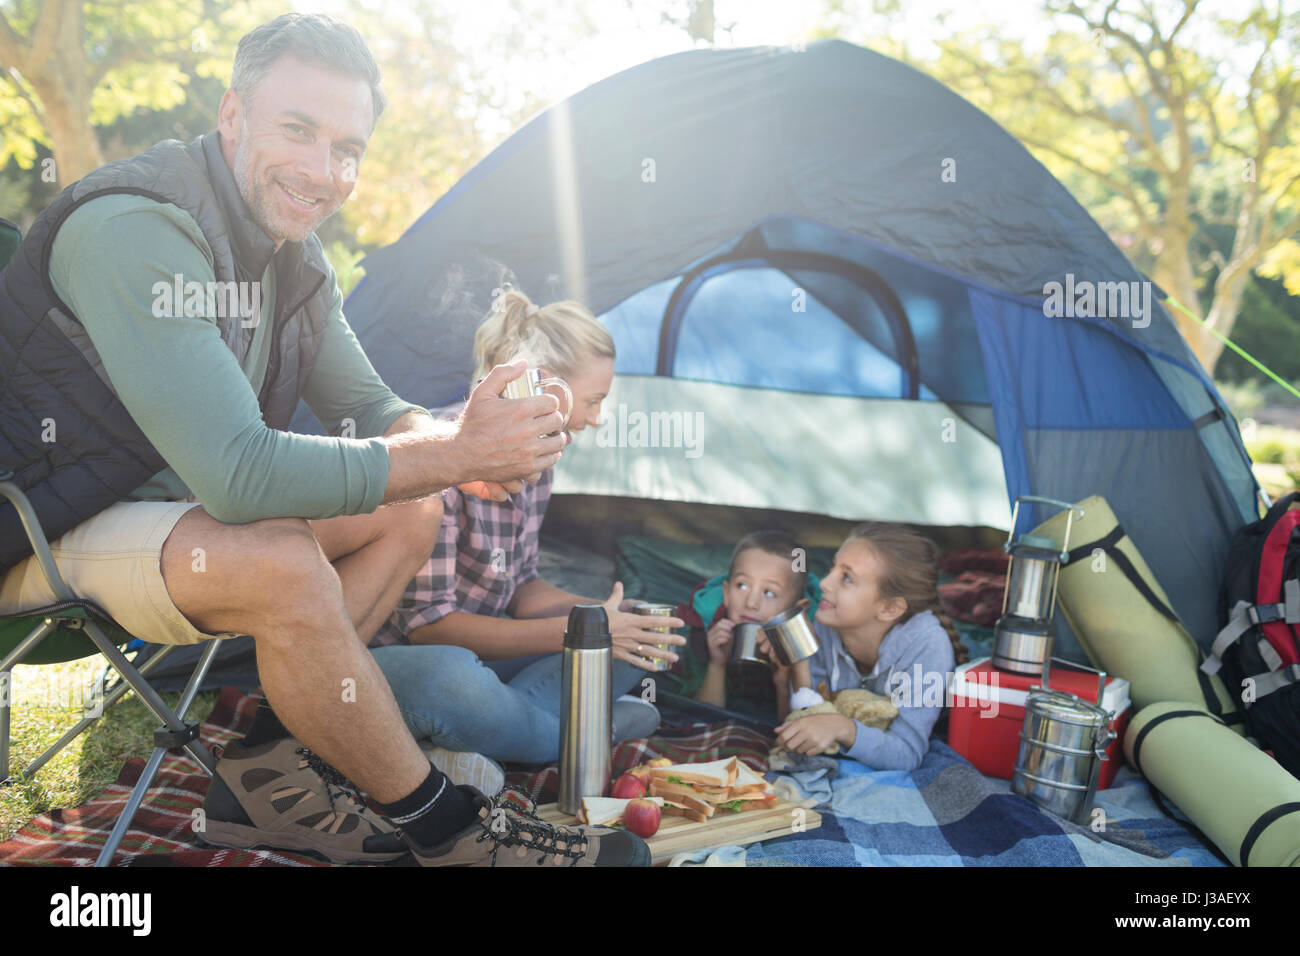 Familie lächelnd mit Snacks und Kaffee außerhalb des Zeltes auf Campingplatz Stockfoto